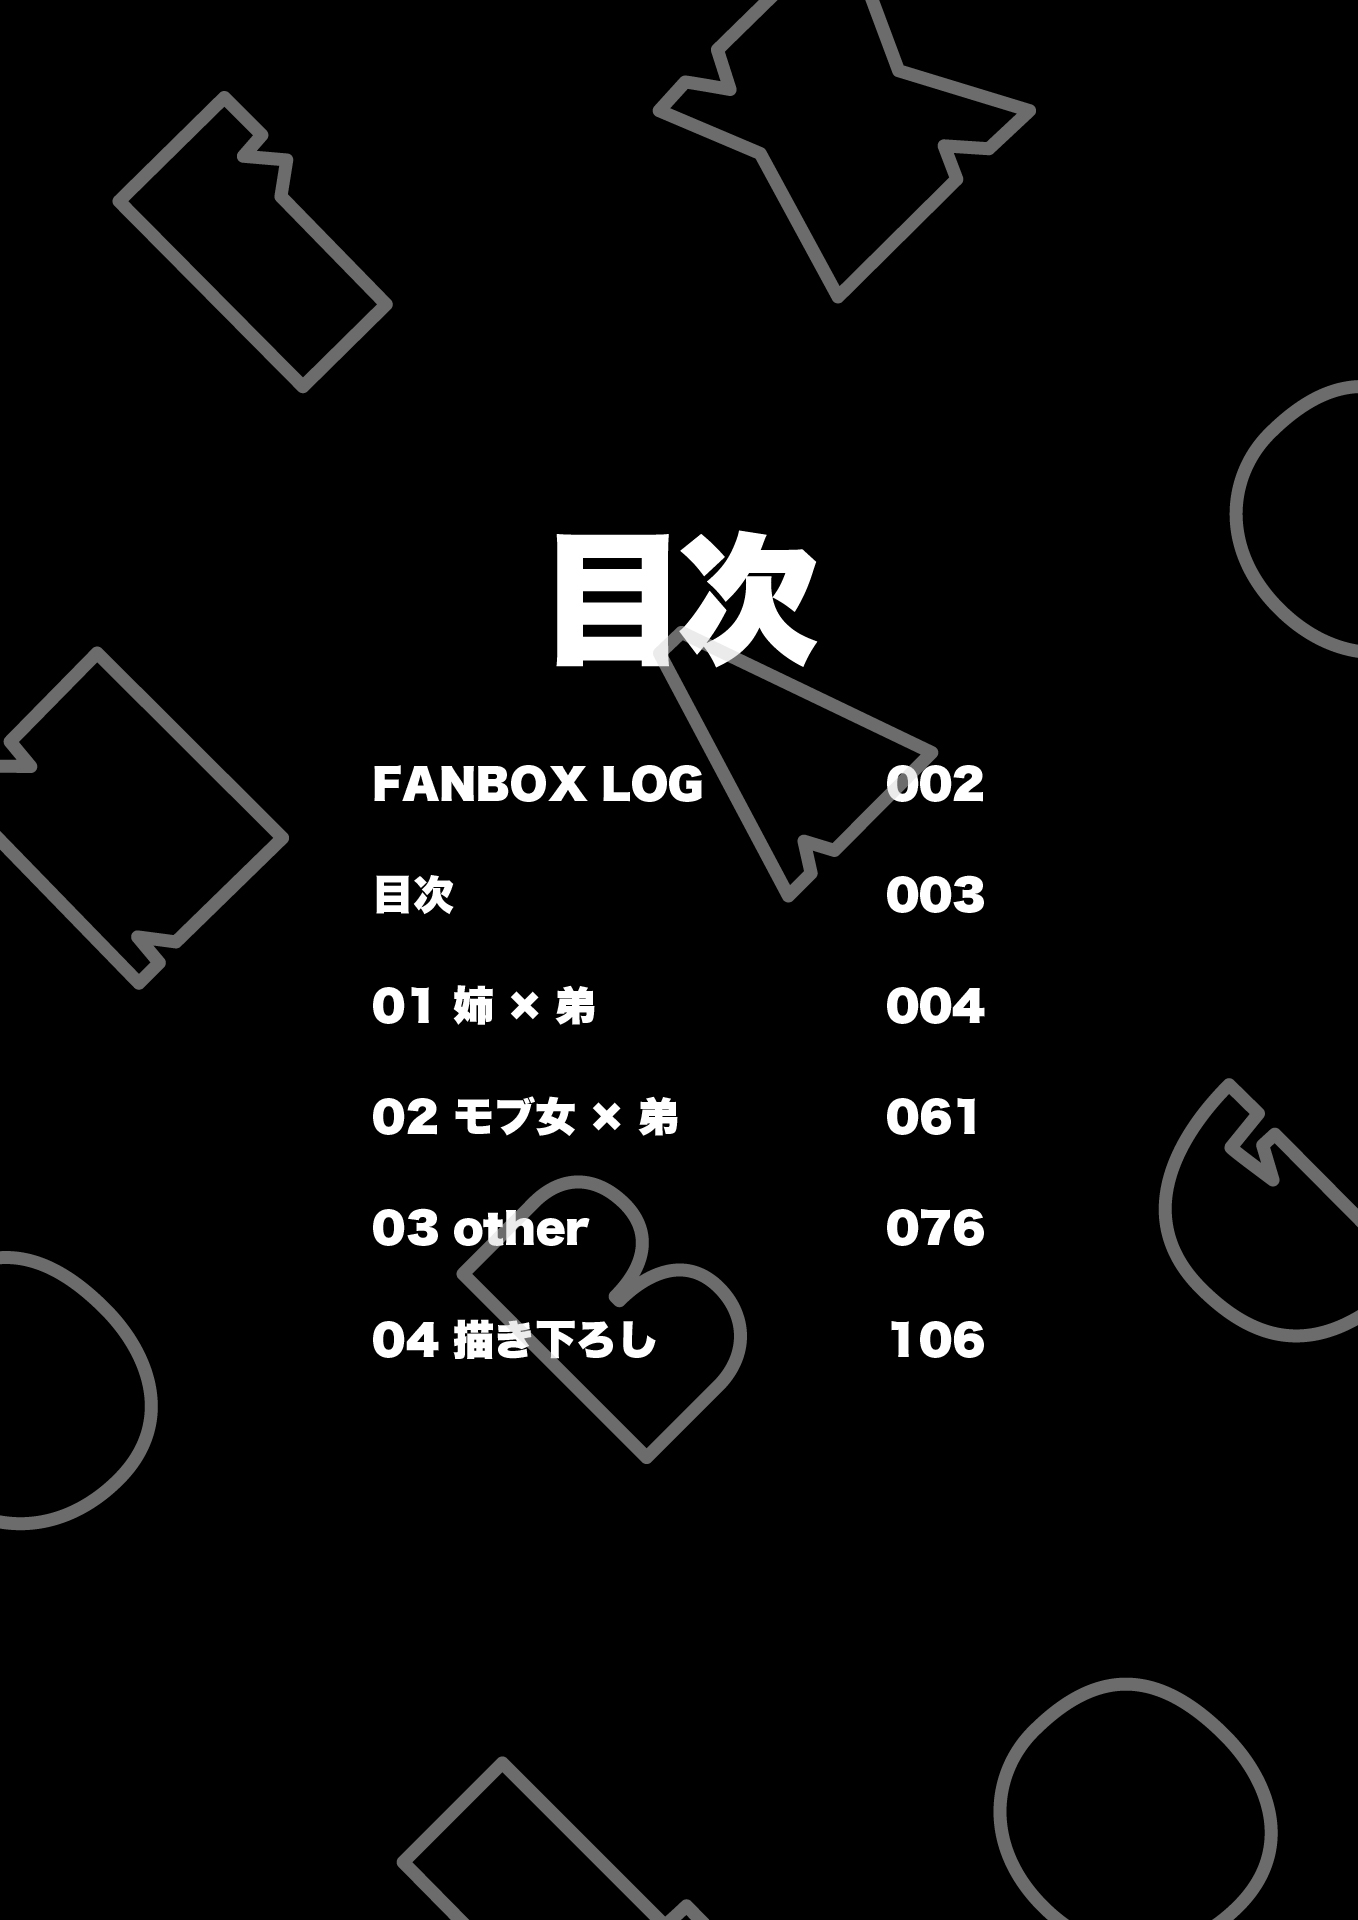 【エロ漫画逆転無し】煮干豆腐 FANBOX LOG vol.1(一宙二星)